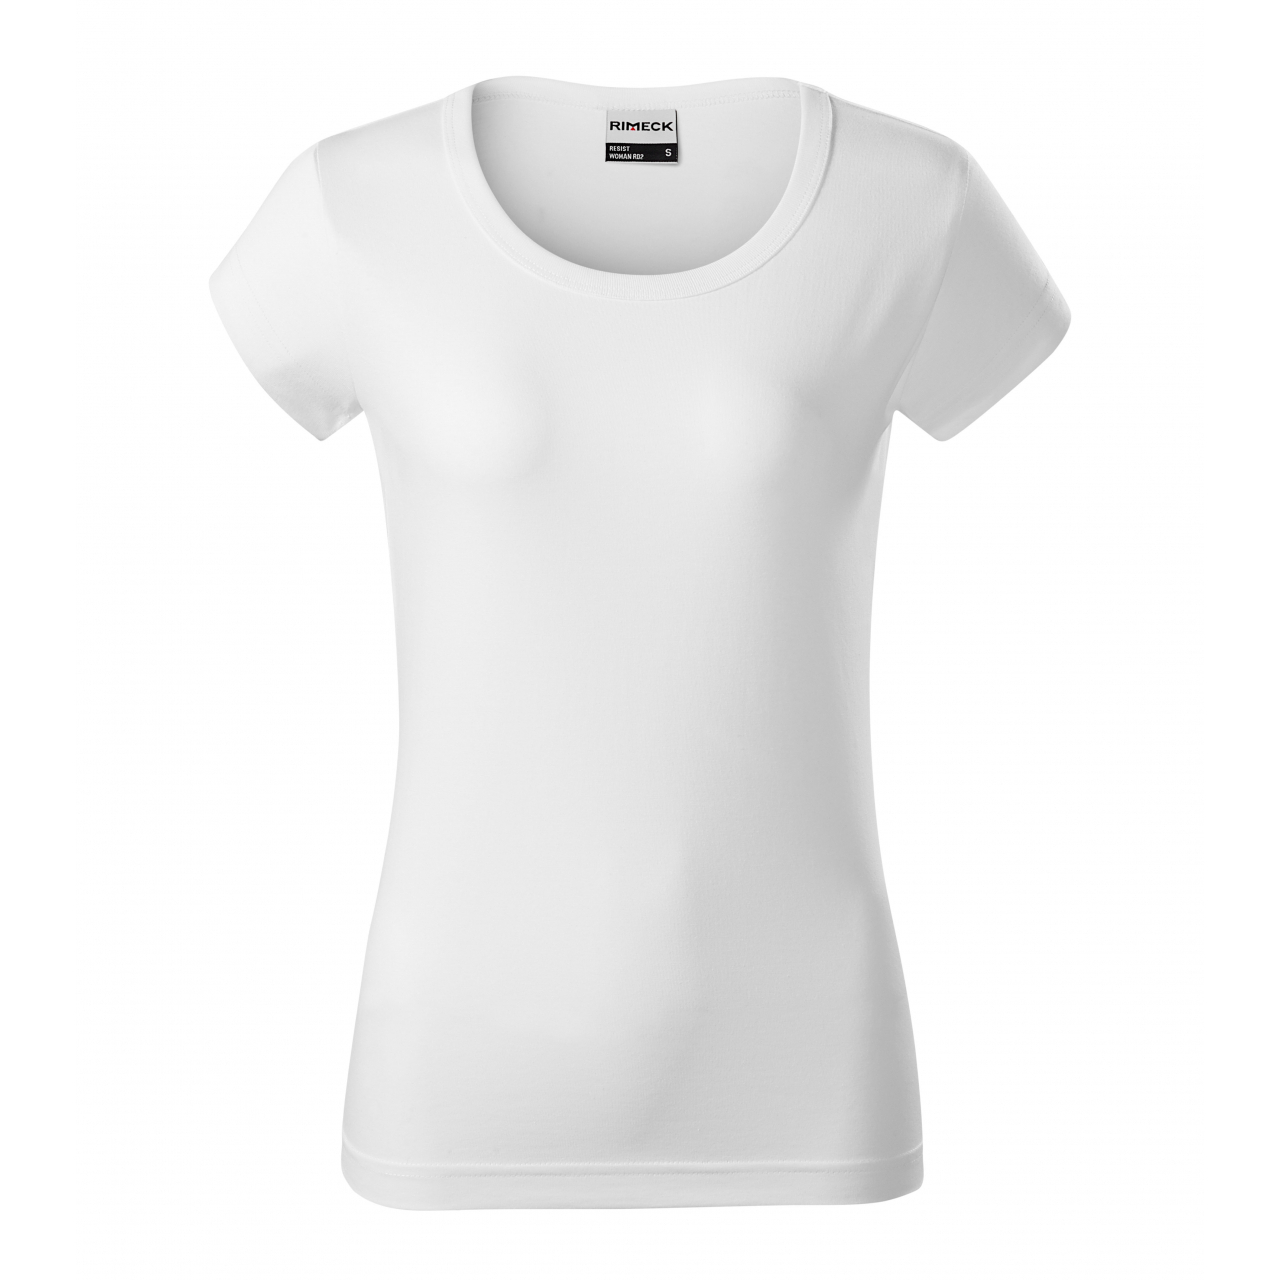 Tričko dámské Rimeck Resist - bílé, XL